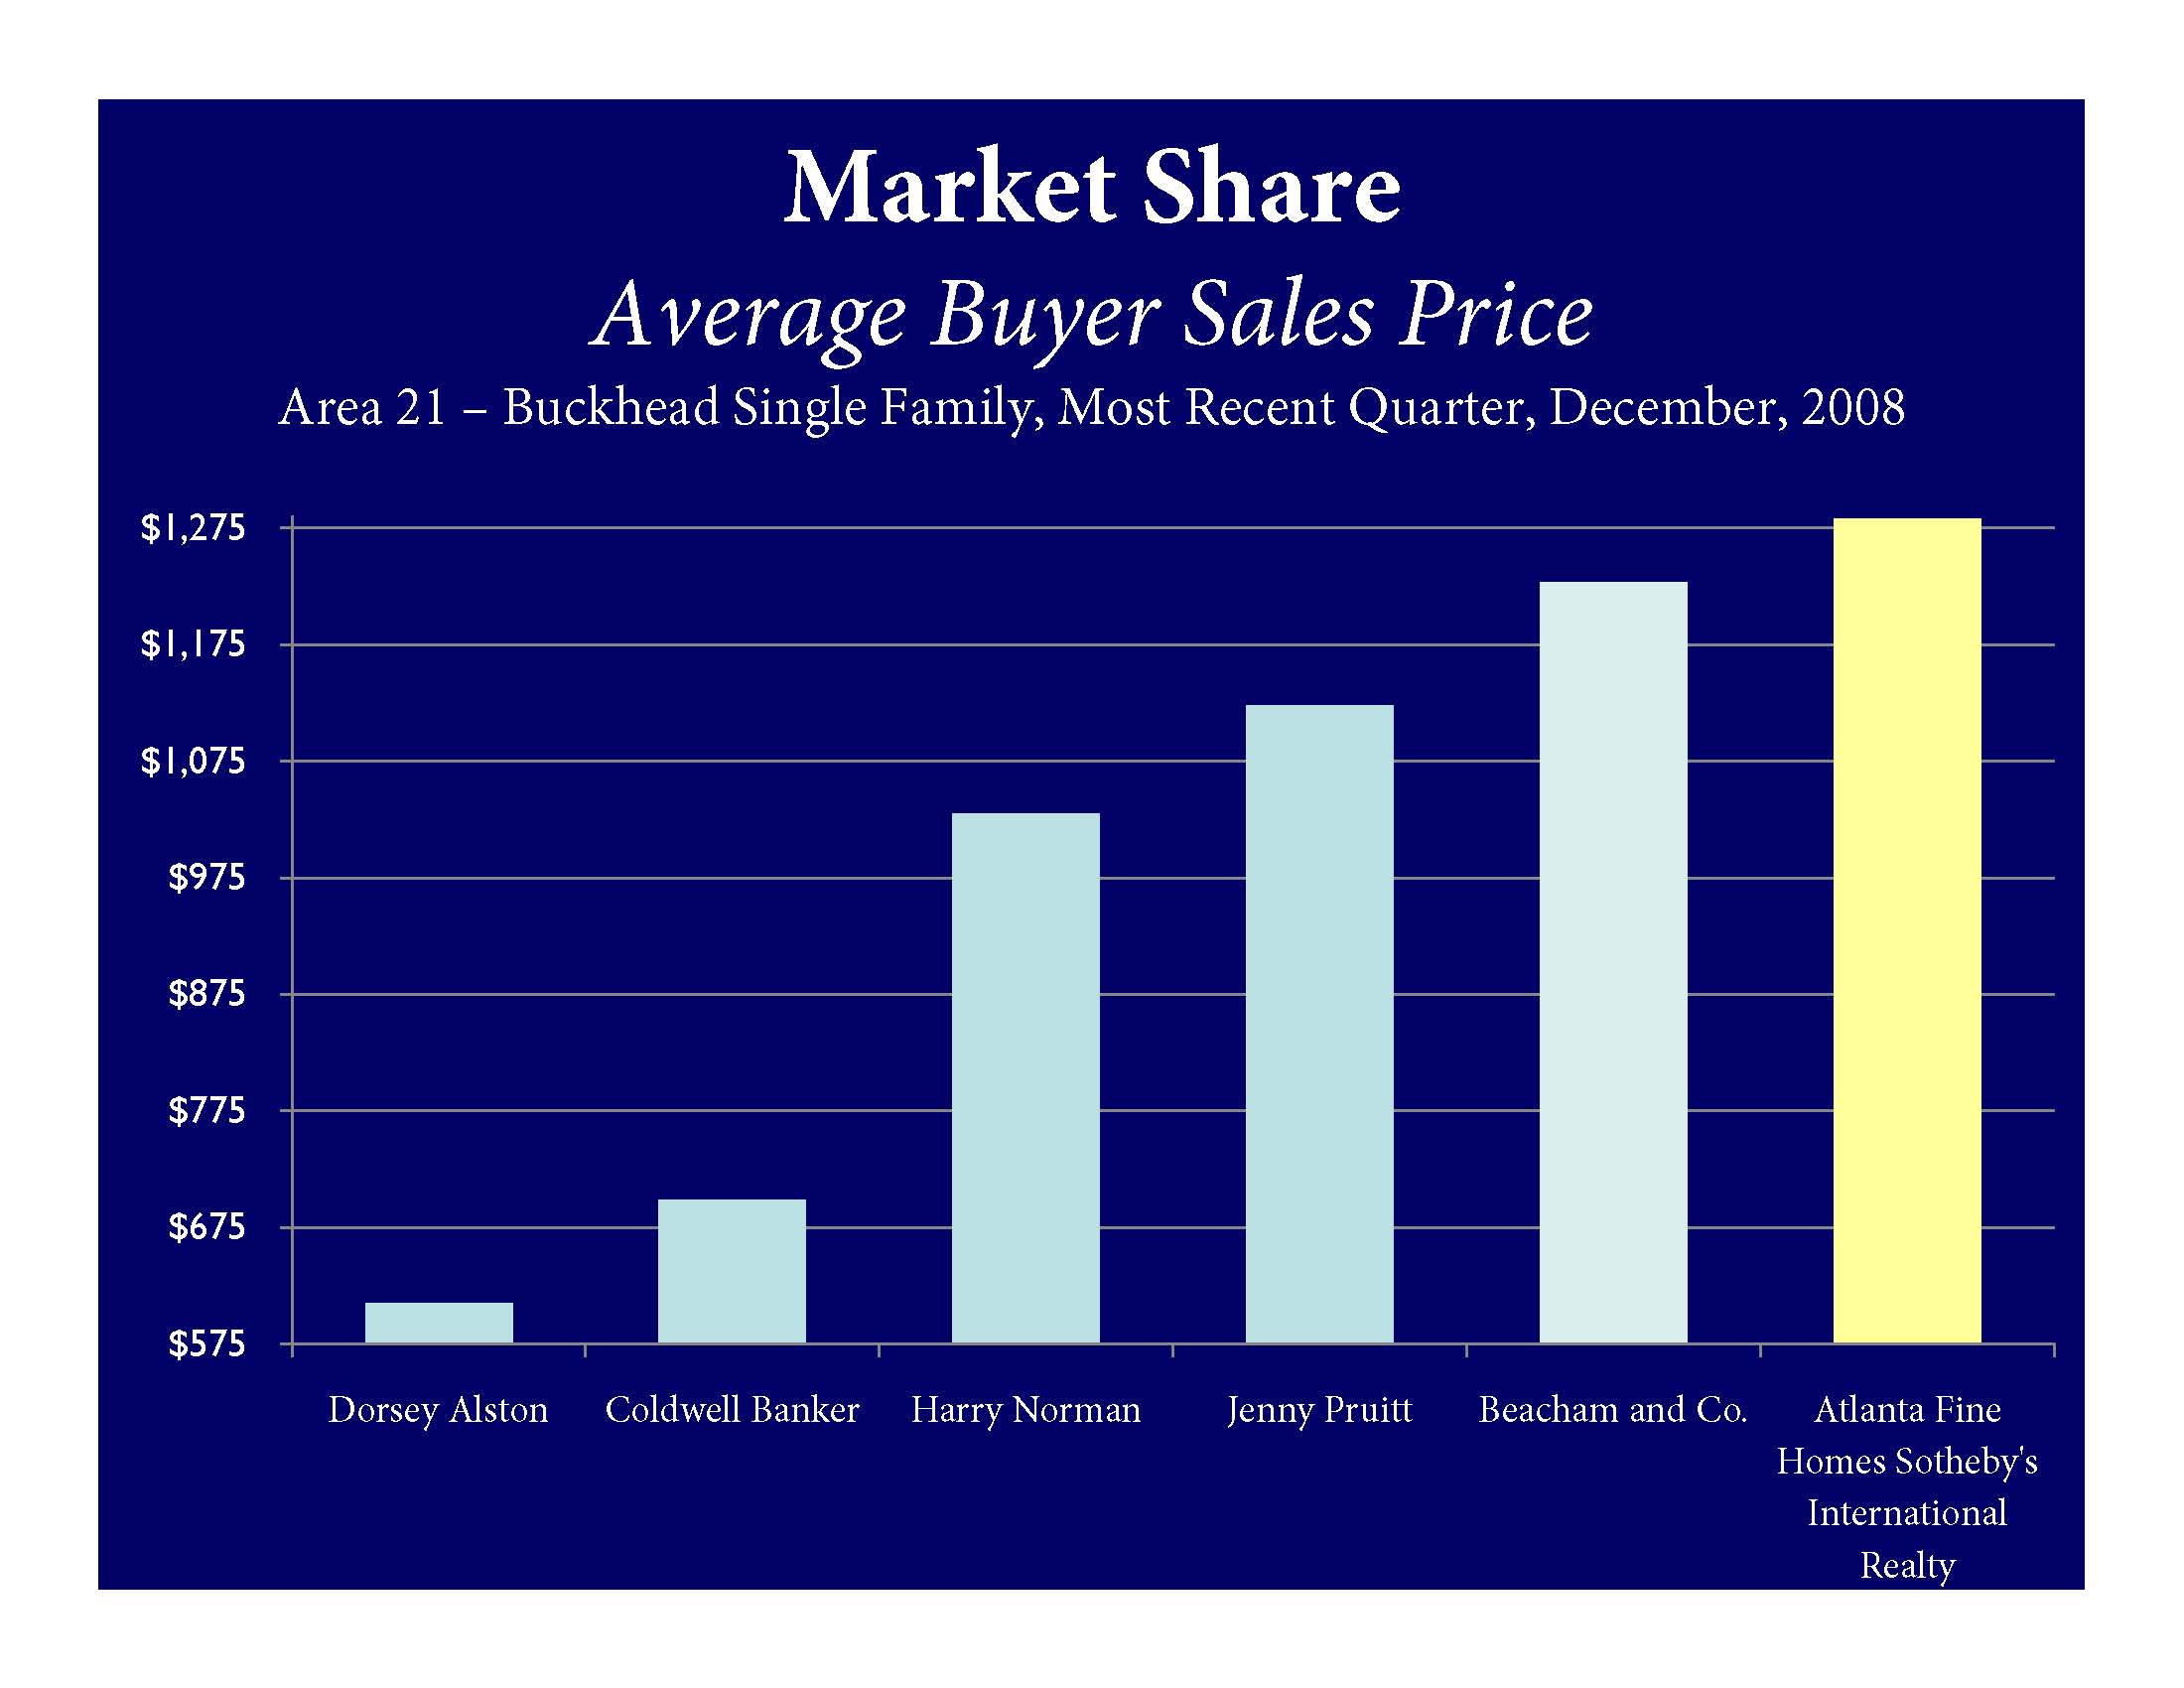 Average buyer sales price